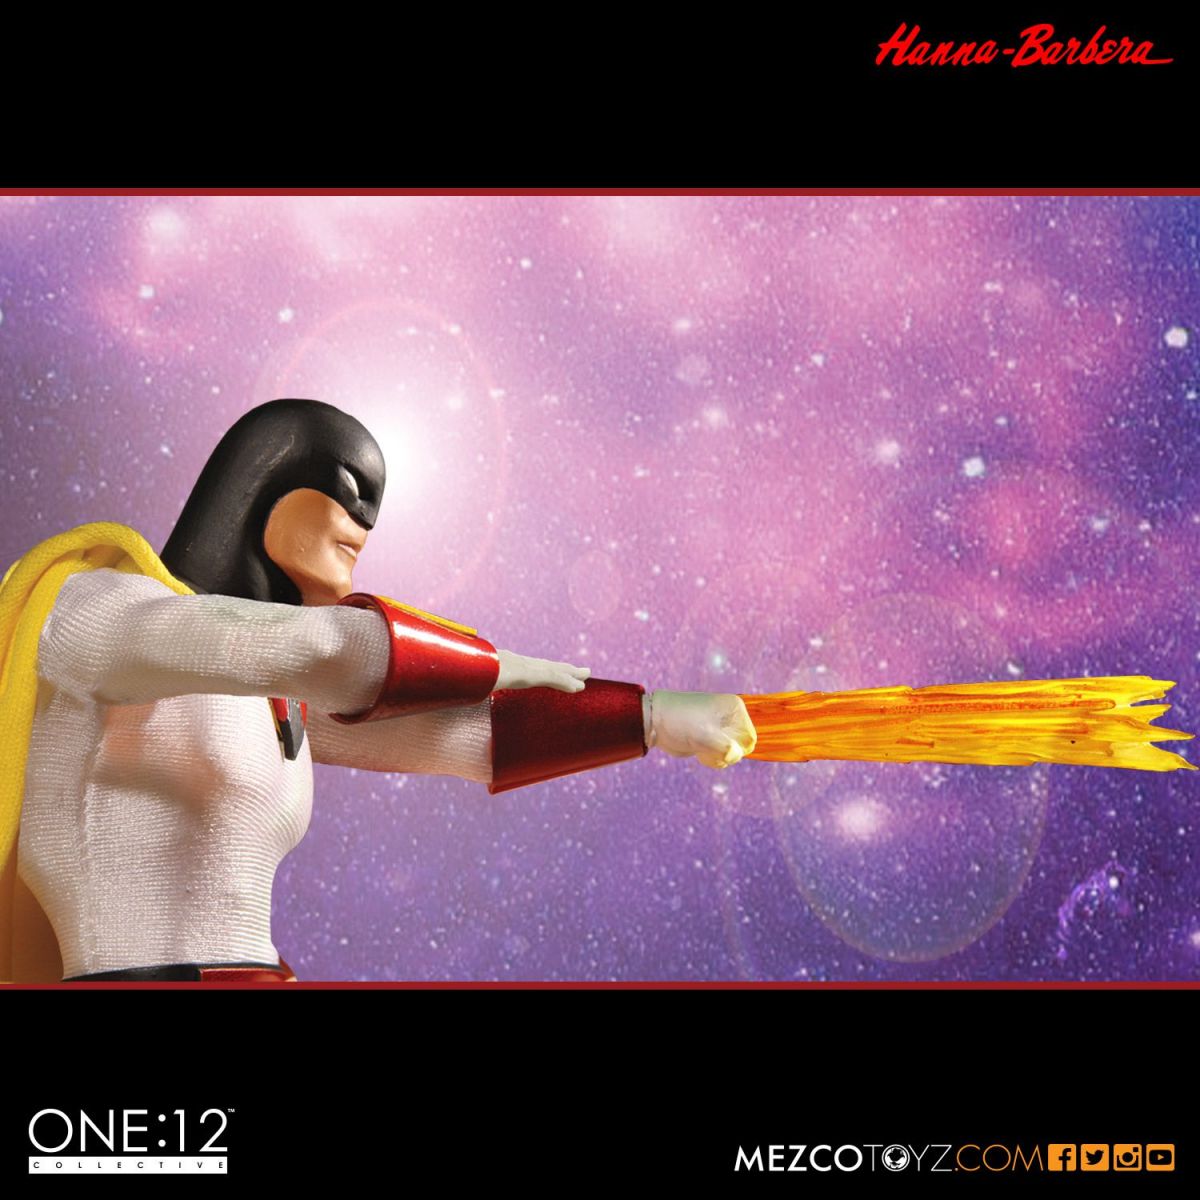 Boneco Space Ghost: The One:12 Collective Escala 1/12 - Mezco